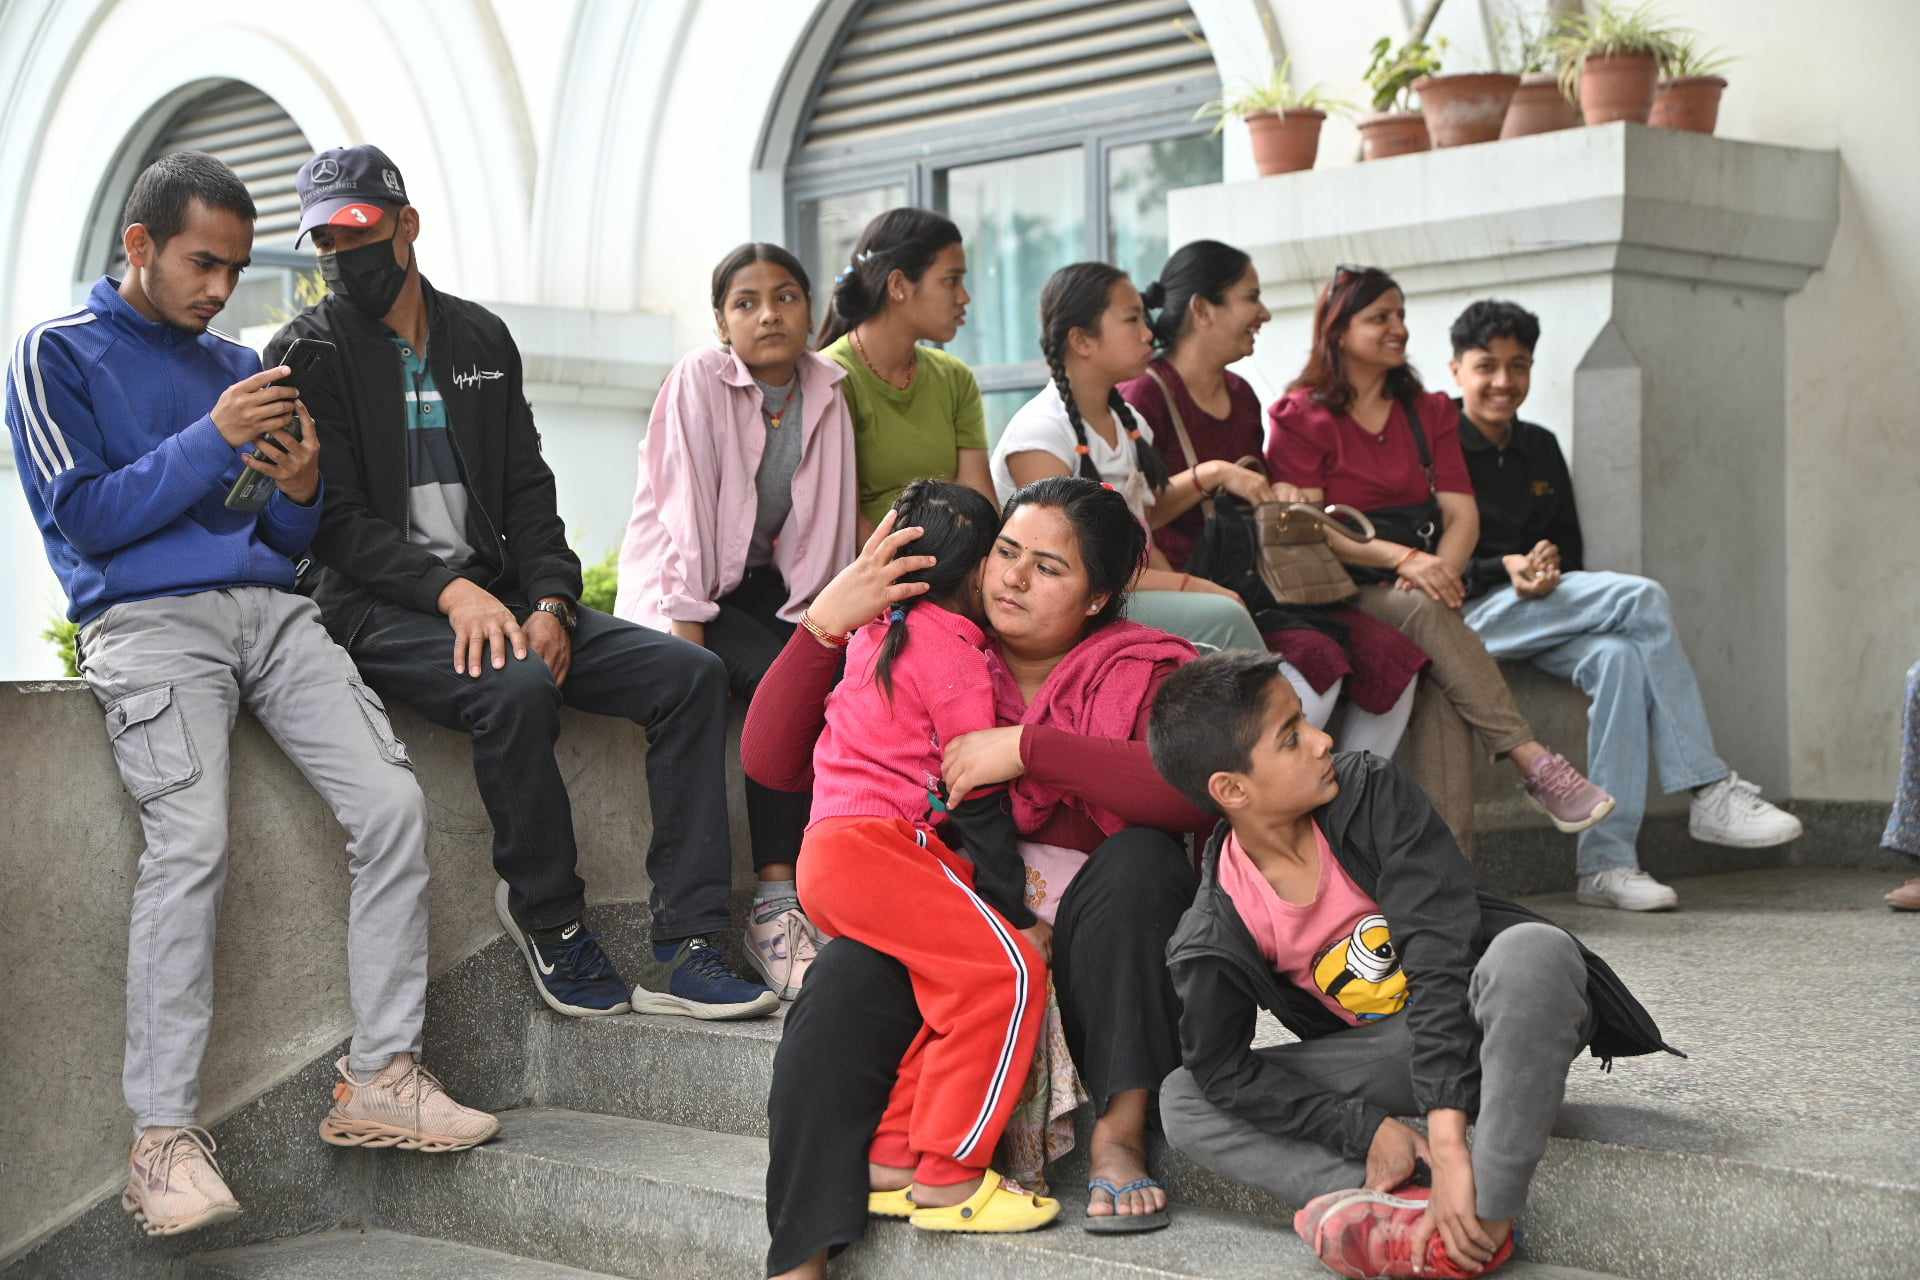 बालेनको प्रयाससँगै काठमाडौंका सामुदायिक विद्यालयमा आकर्षण, गुणस्तर धान्न भने चुनौती